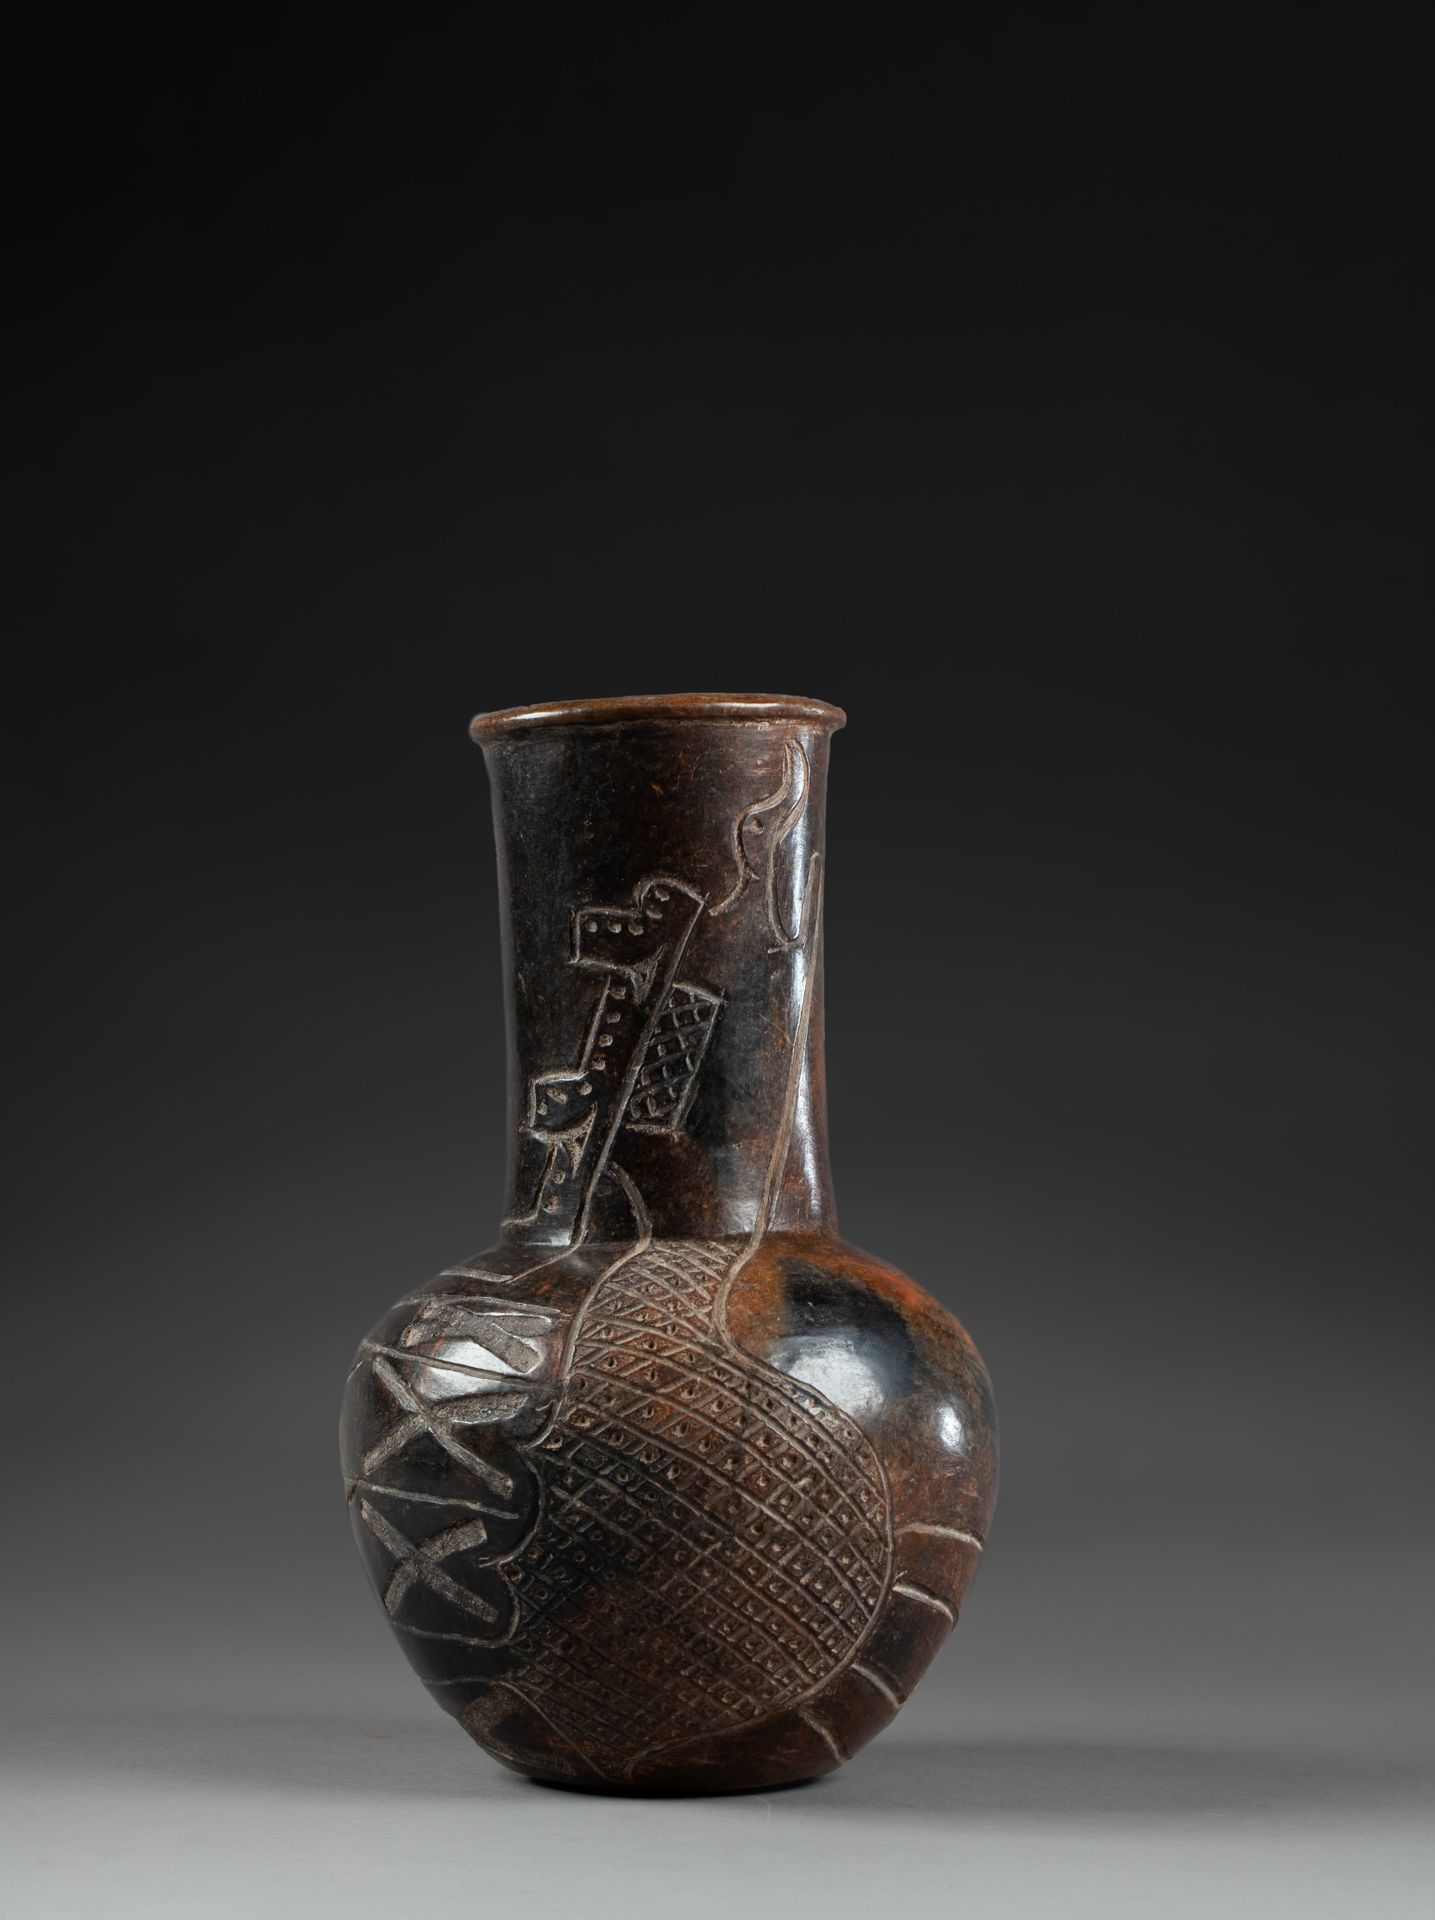 *Vase à long col cylindrique 
È inciso con una decorazione che evoca una divinit&hellip;